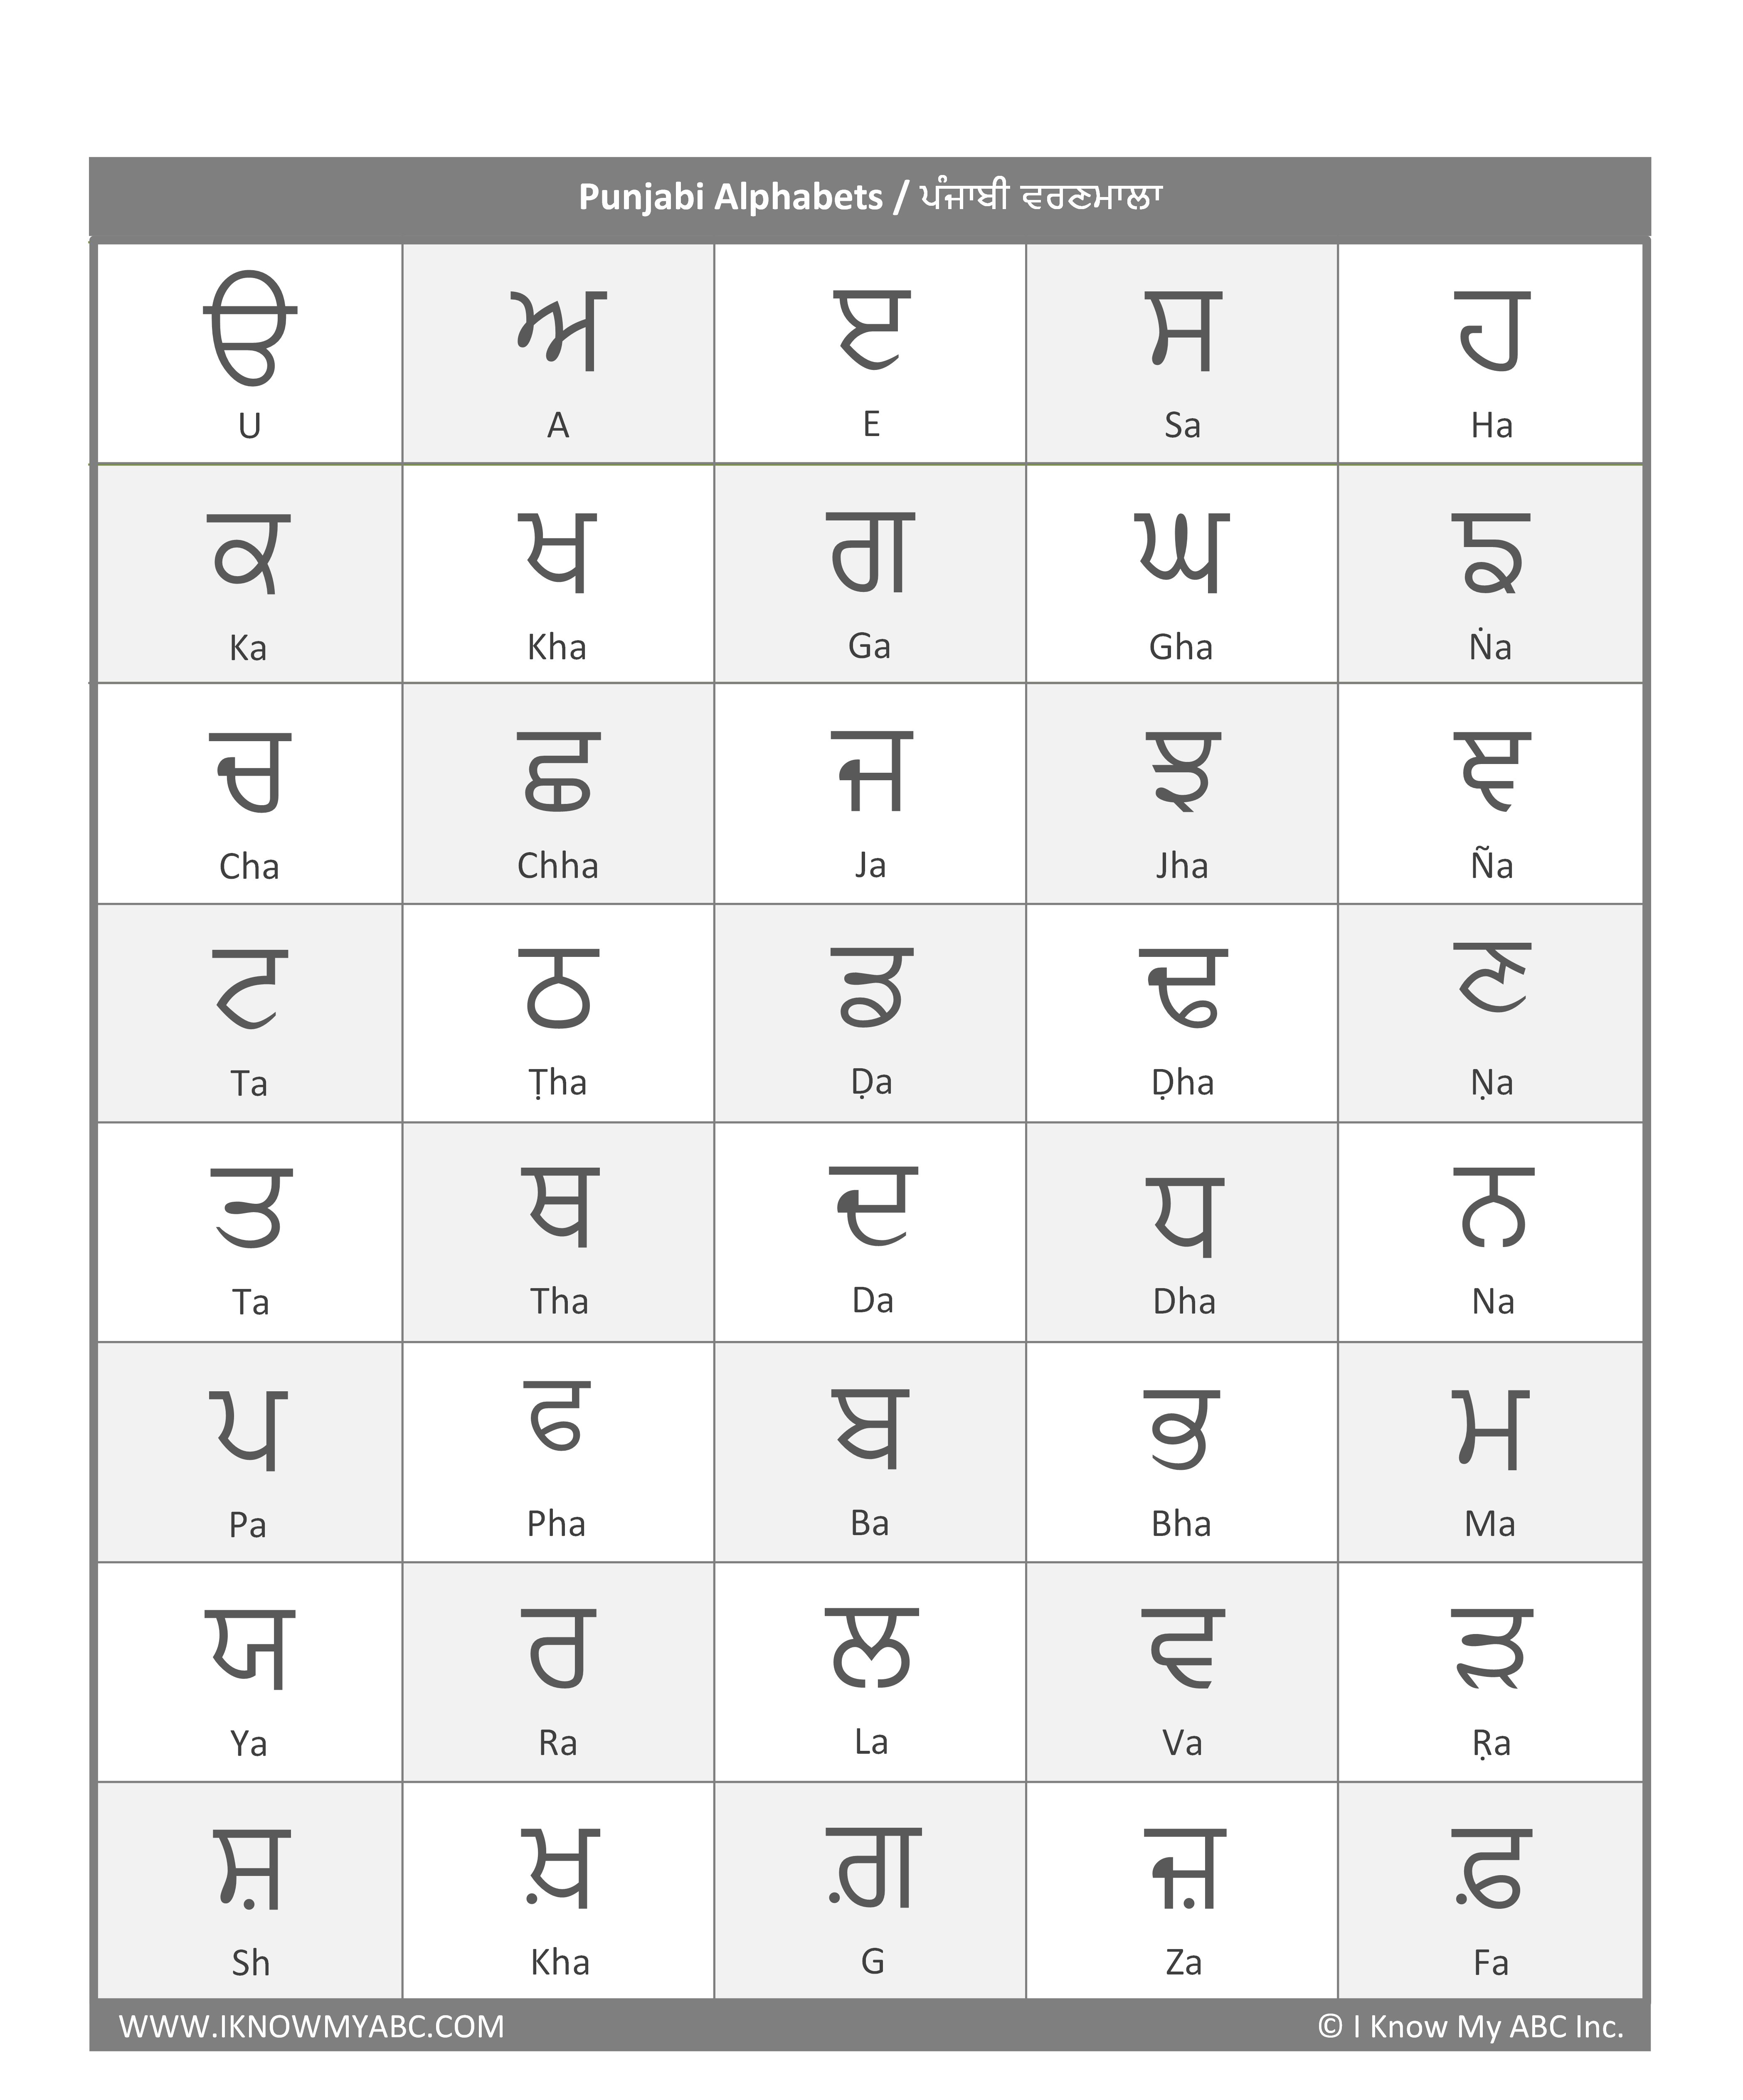 write punjabi text on image